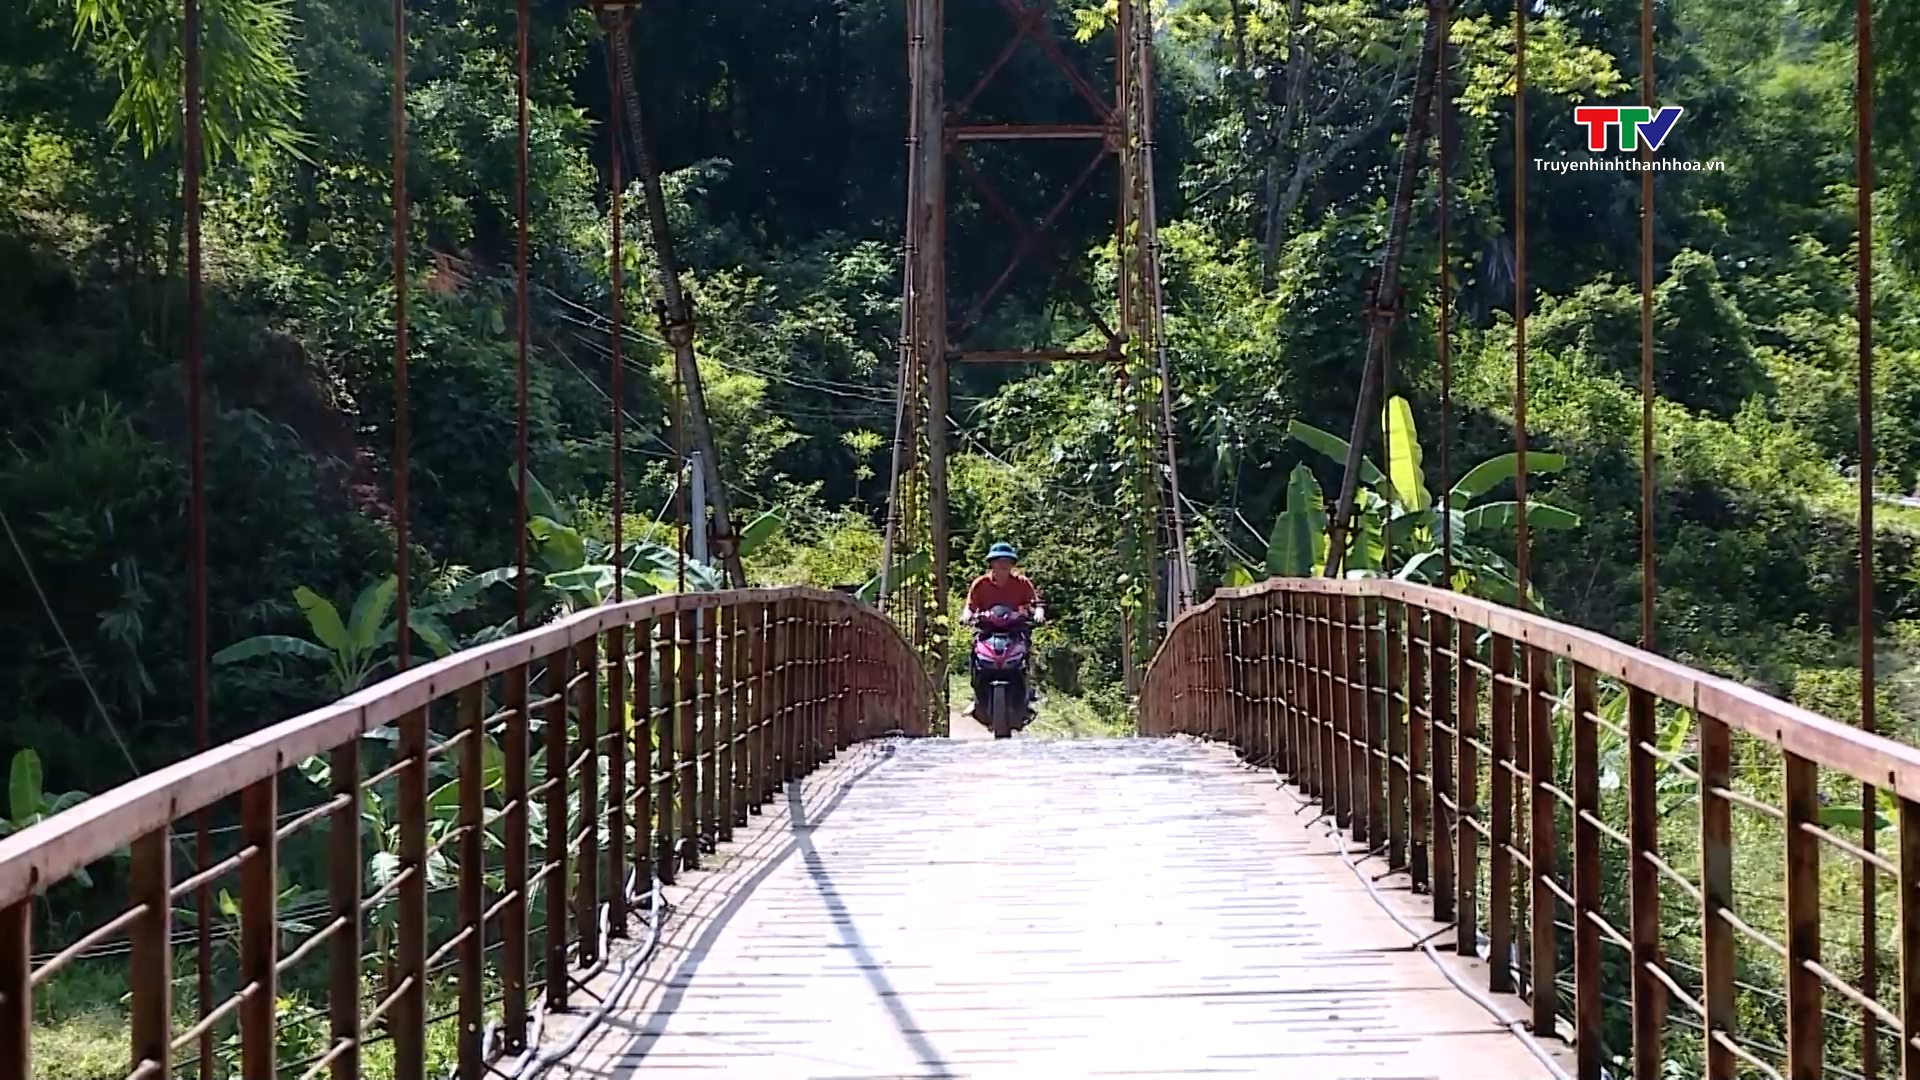  Nhiều cầu treo ở Thanh Hóa cần được duy tu, sửa chữa - Ảnh 2.